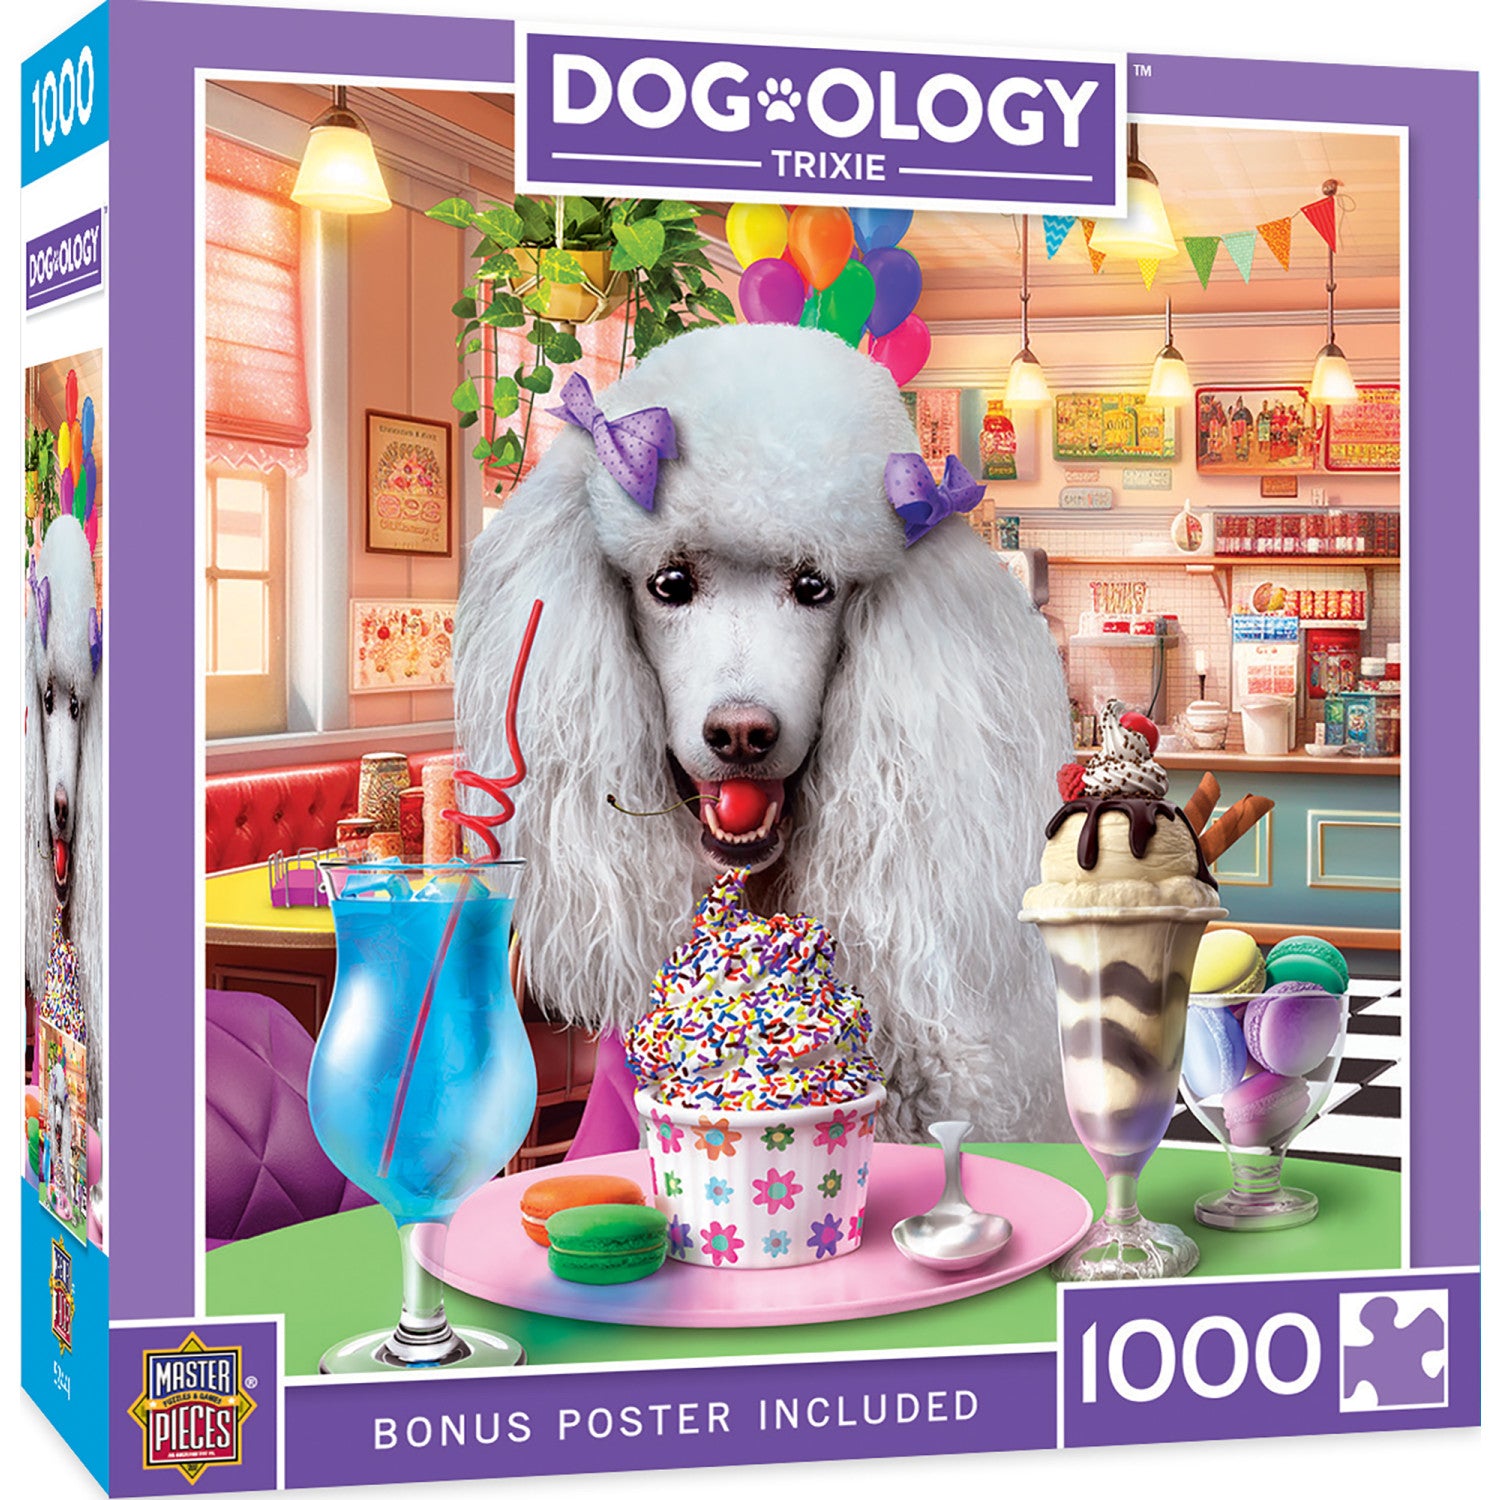 Dogology - Trixie 1000 Piece Jigsaw Puzzle